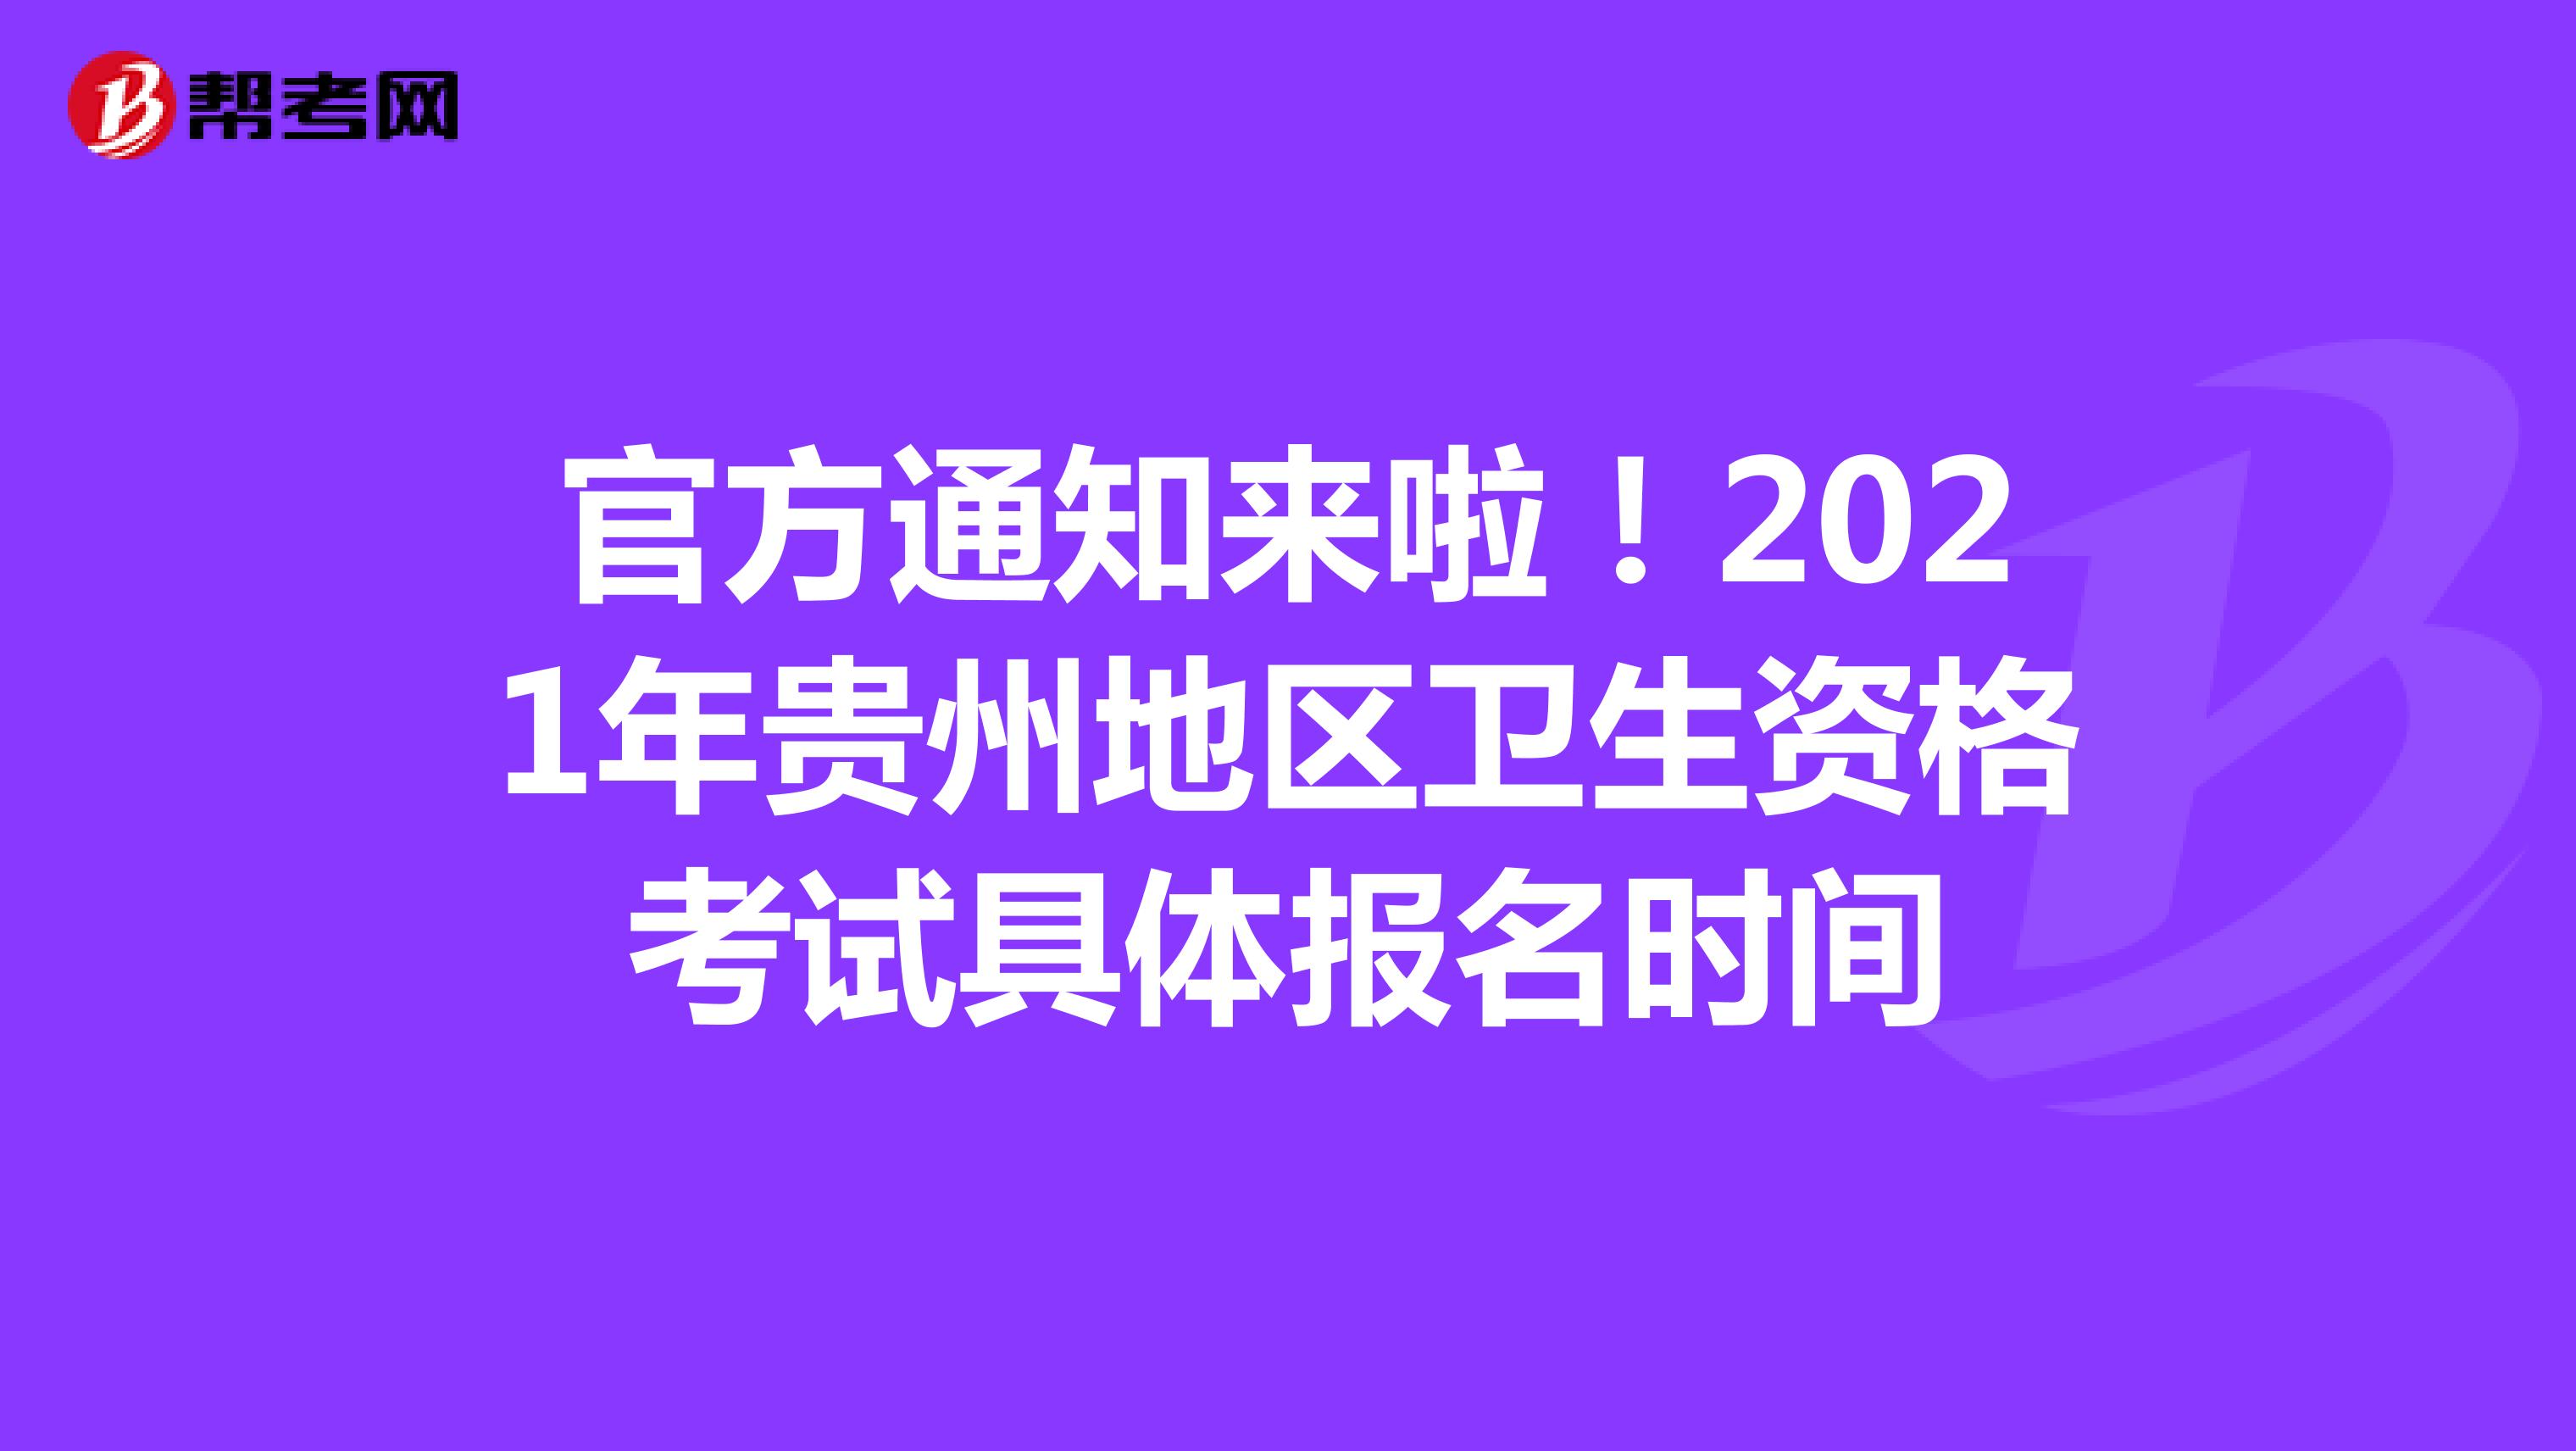 官方通知来啦！2021年贵州地区卫生资格考试具体报名时间